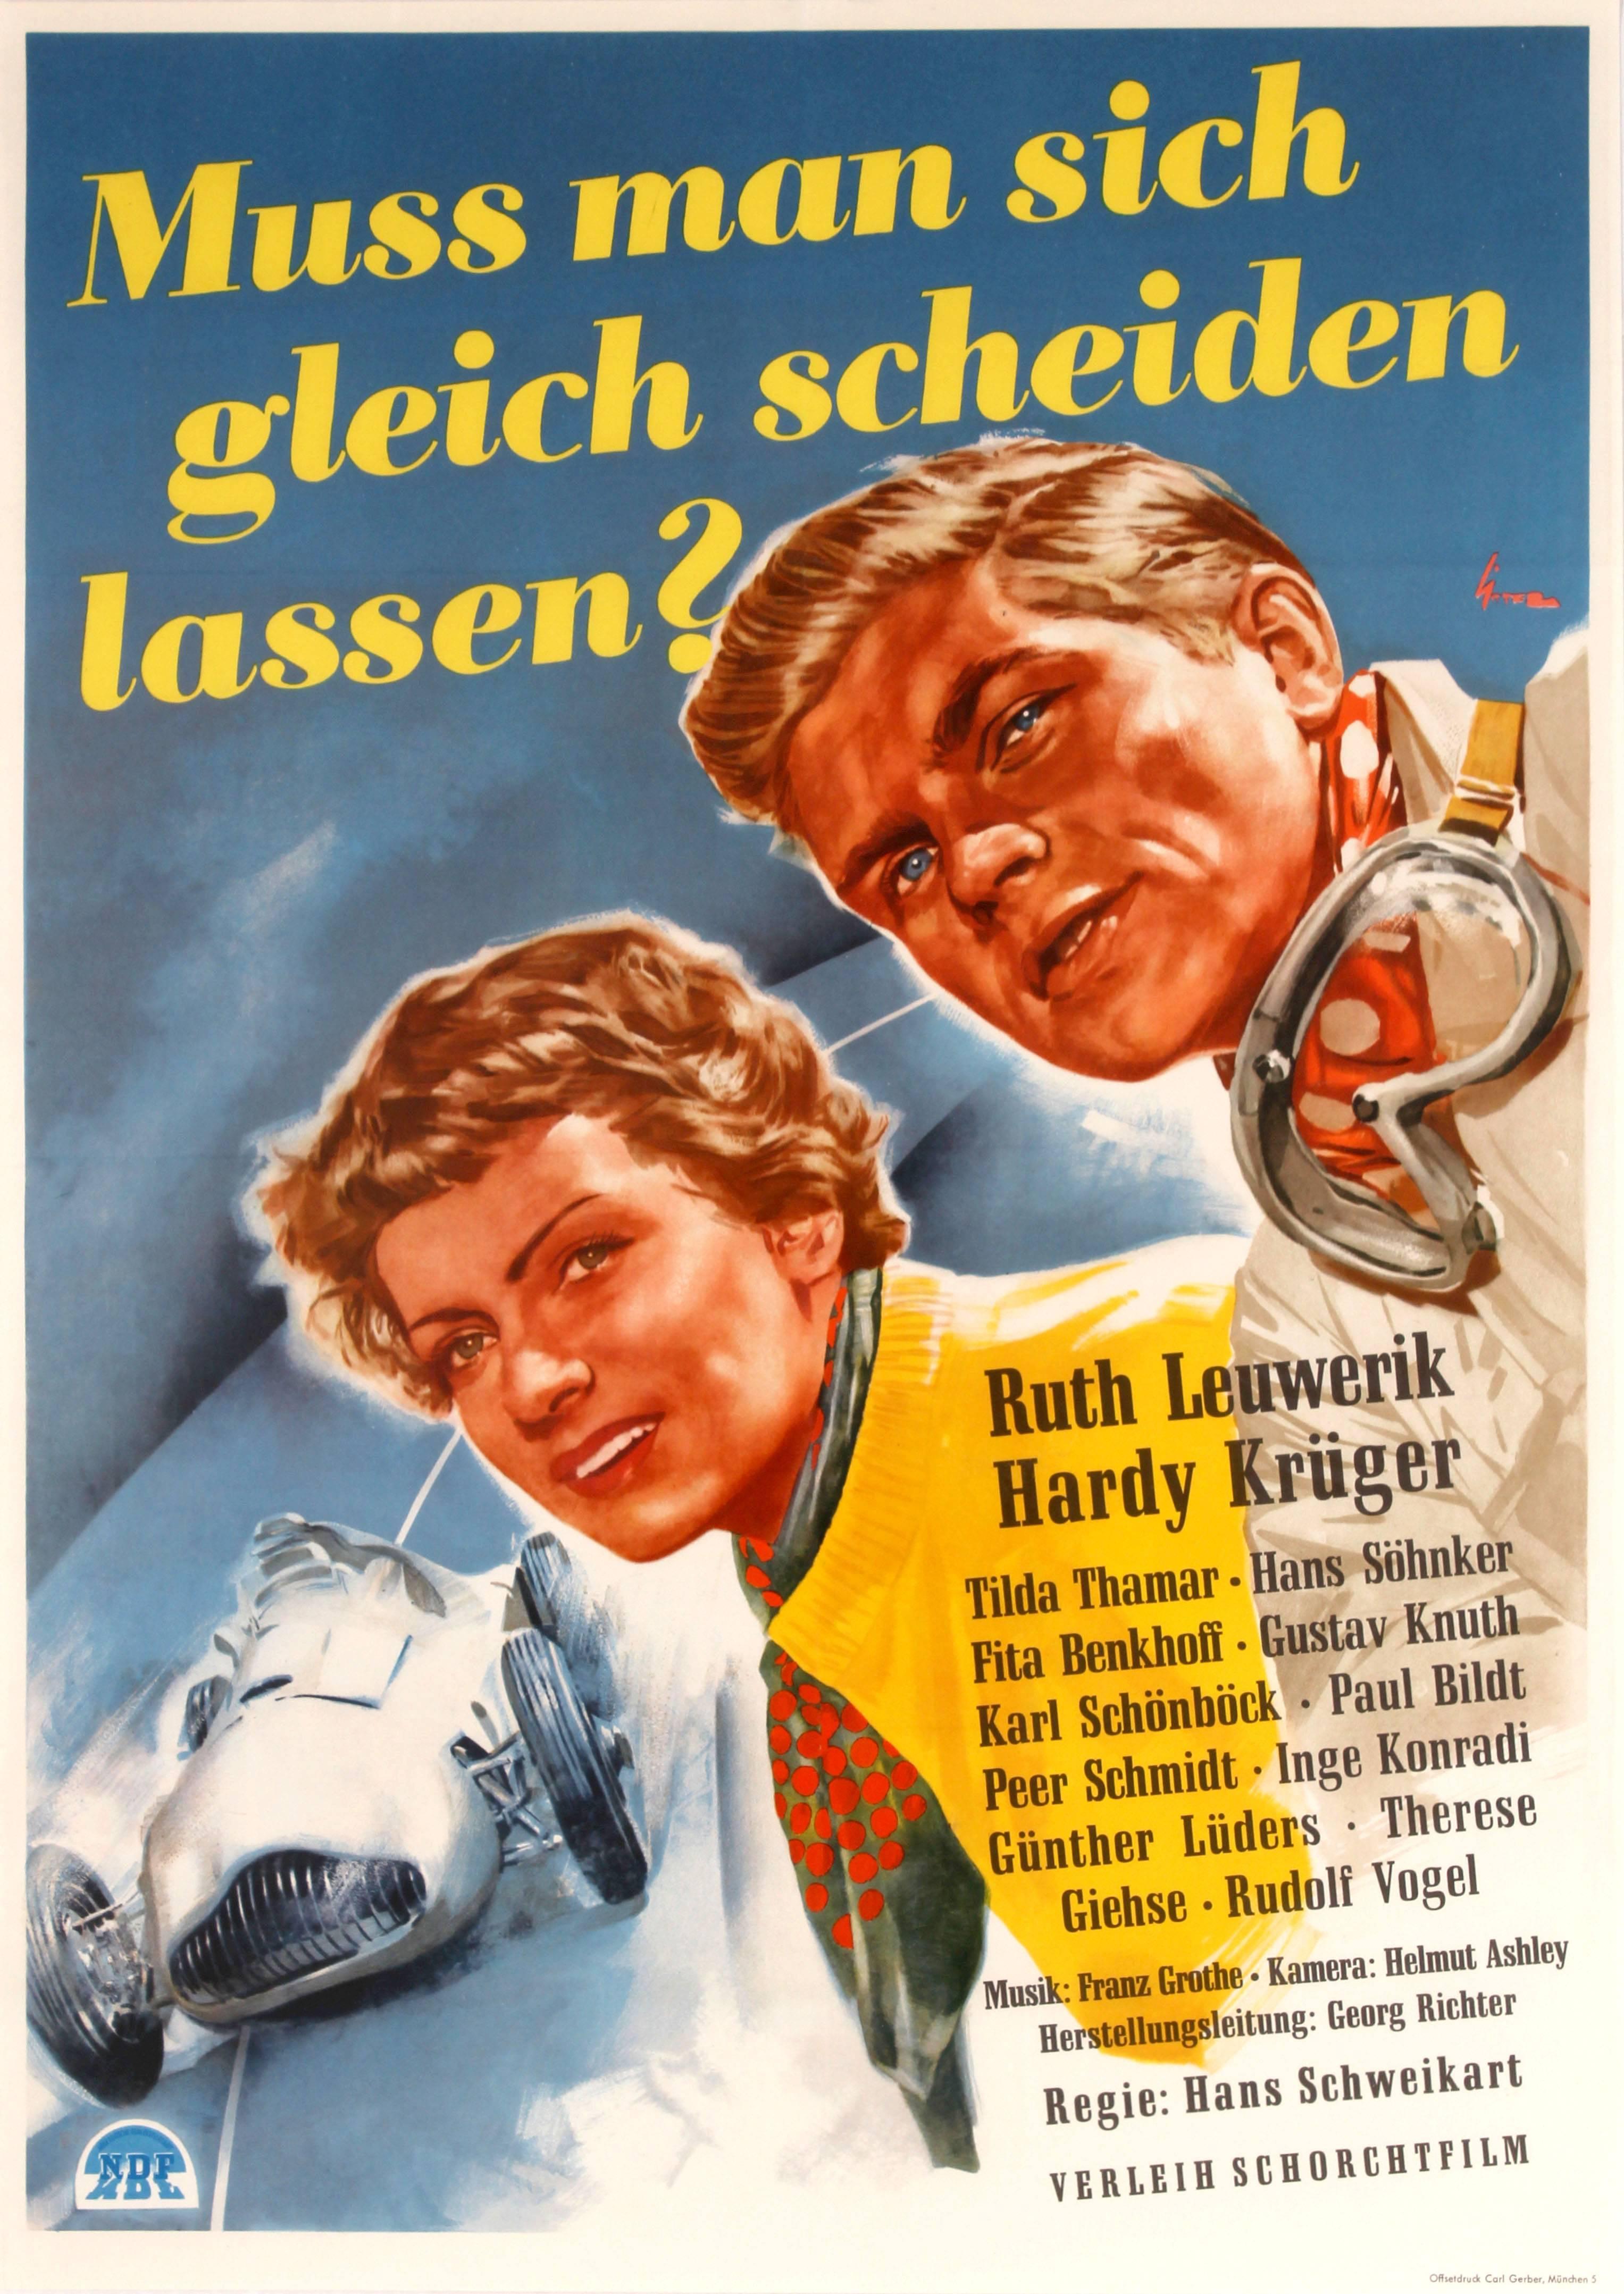 Ernst Litter Print - Original Vintage German Movie Poster For "Muss Man sich gleich scheiden lassen?"